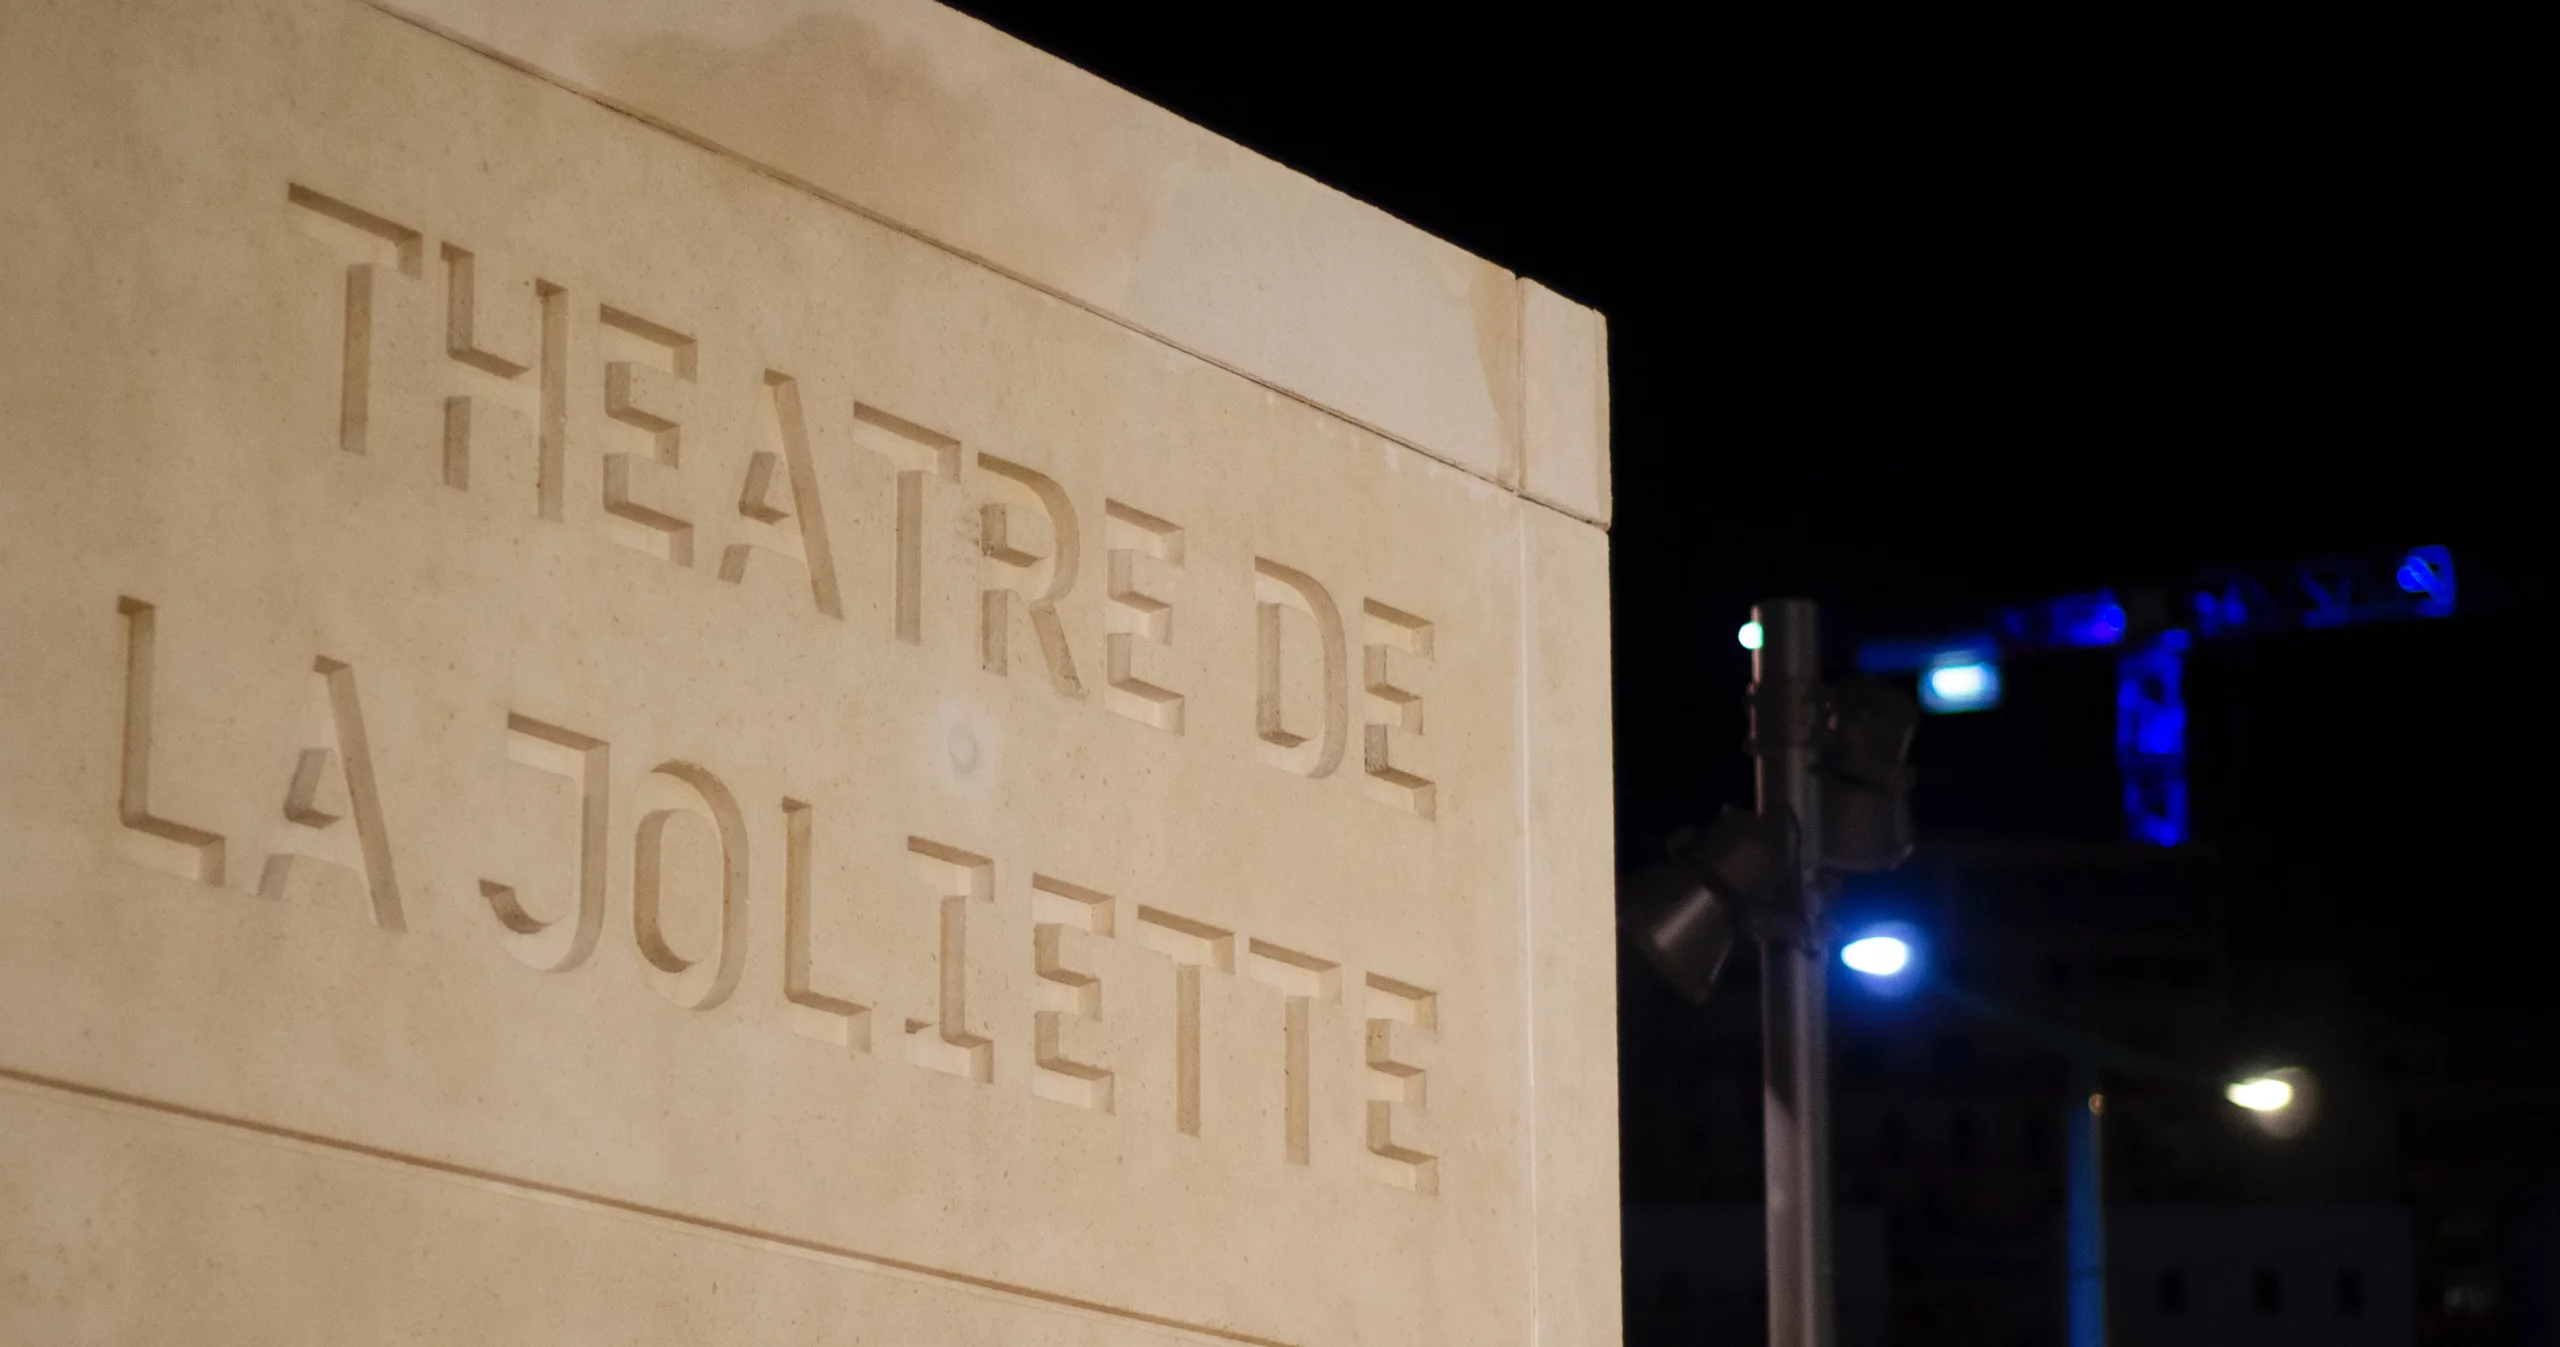 Photo du nom "Théâtre de la Joliette" gravé dans de la pierre avec une scène de spectacle dans l'obscurité en arrière-plan